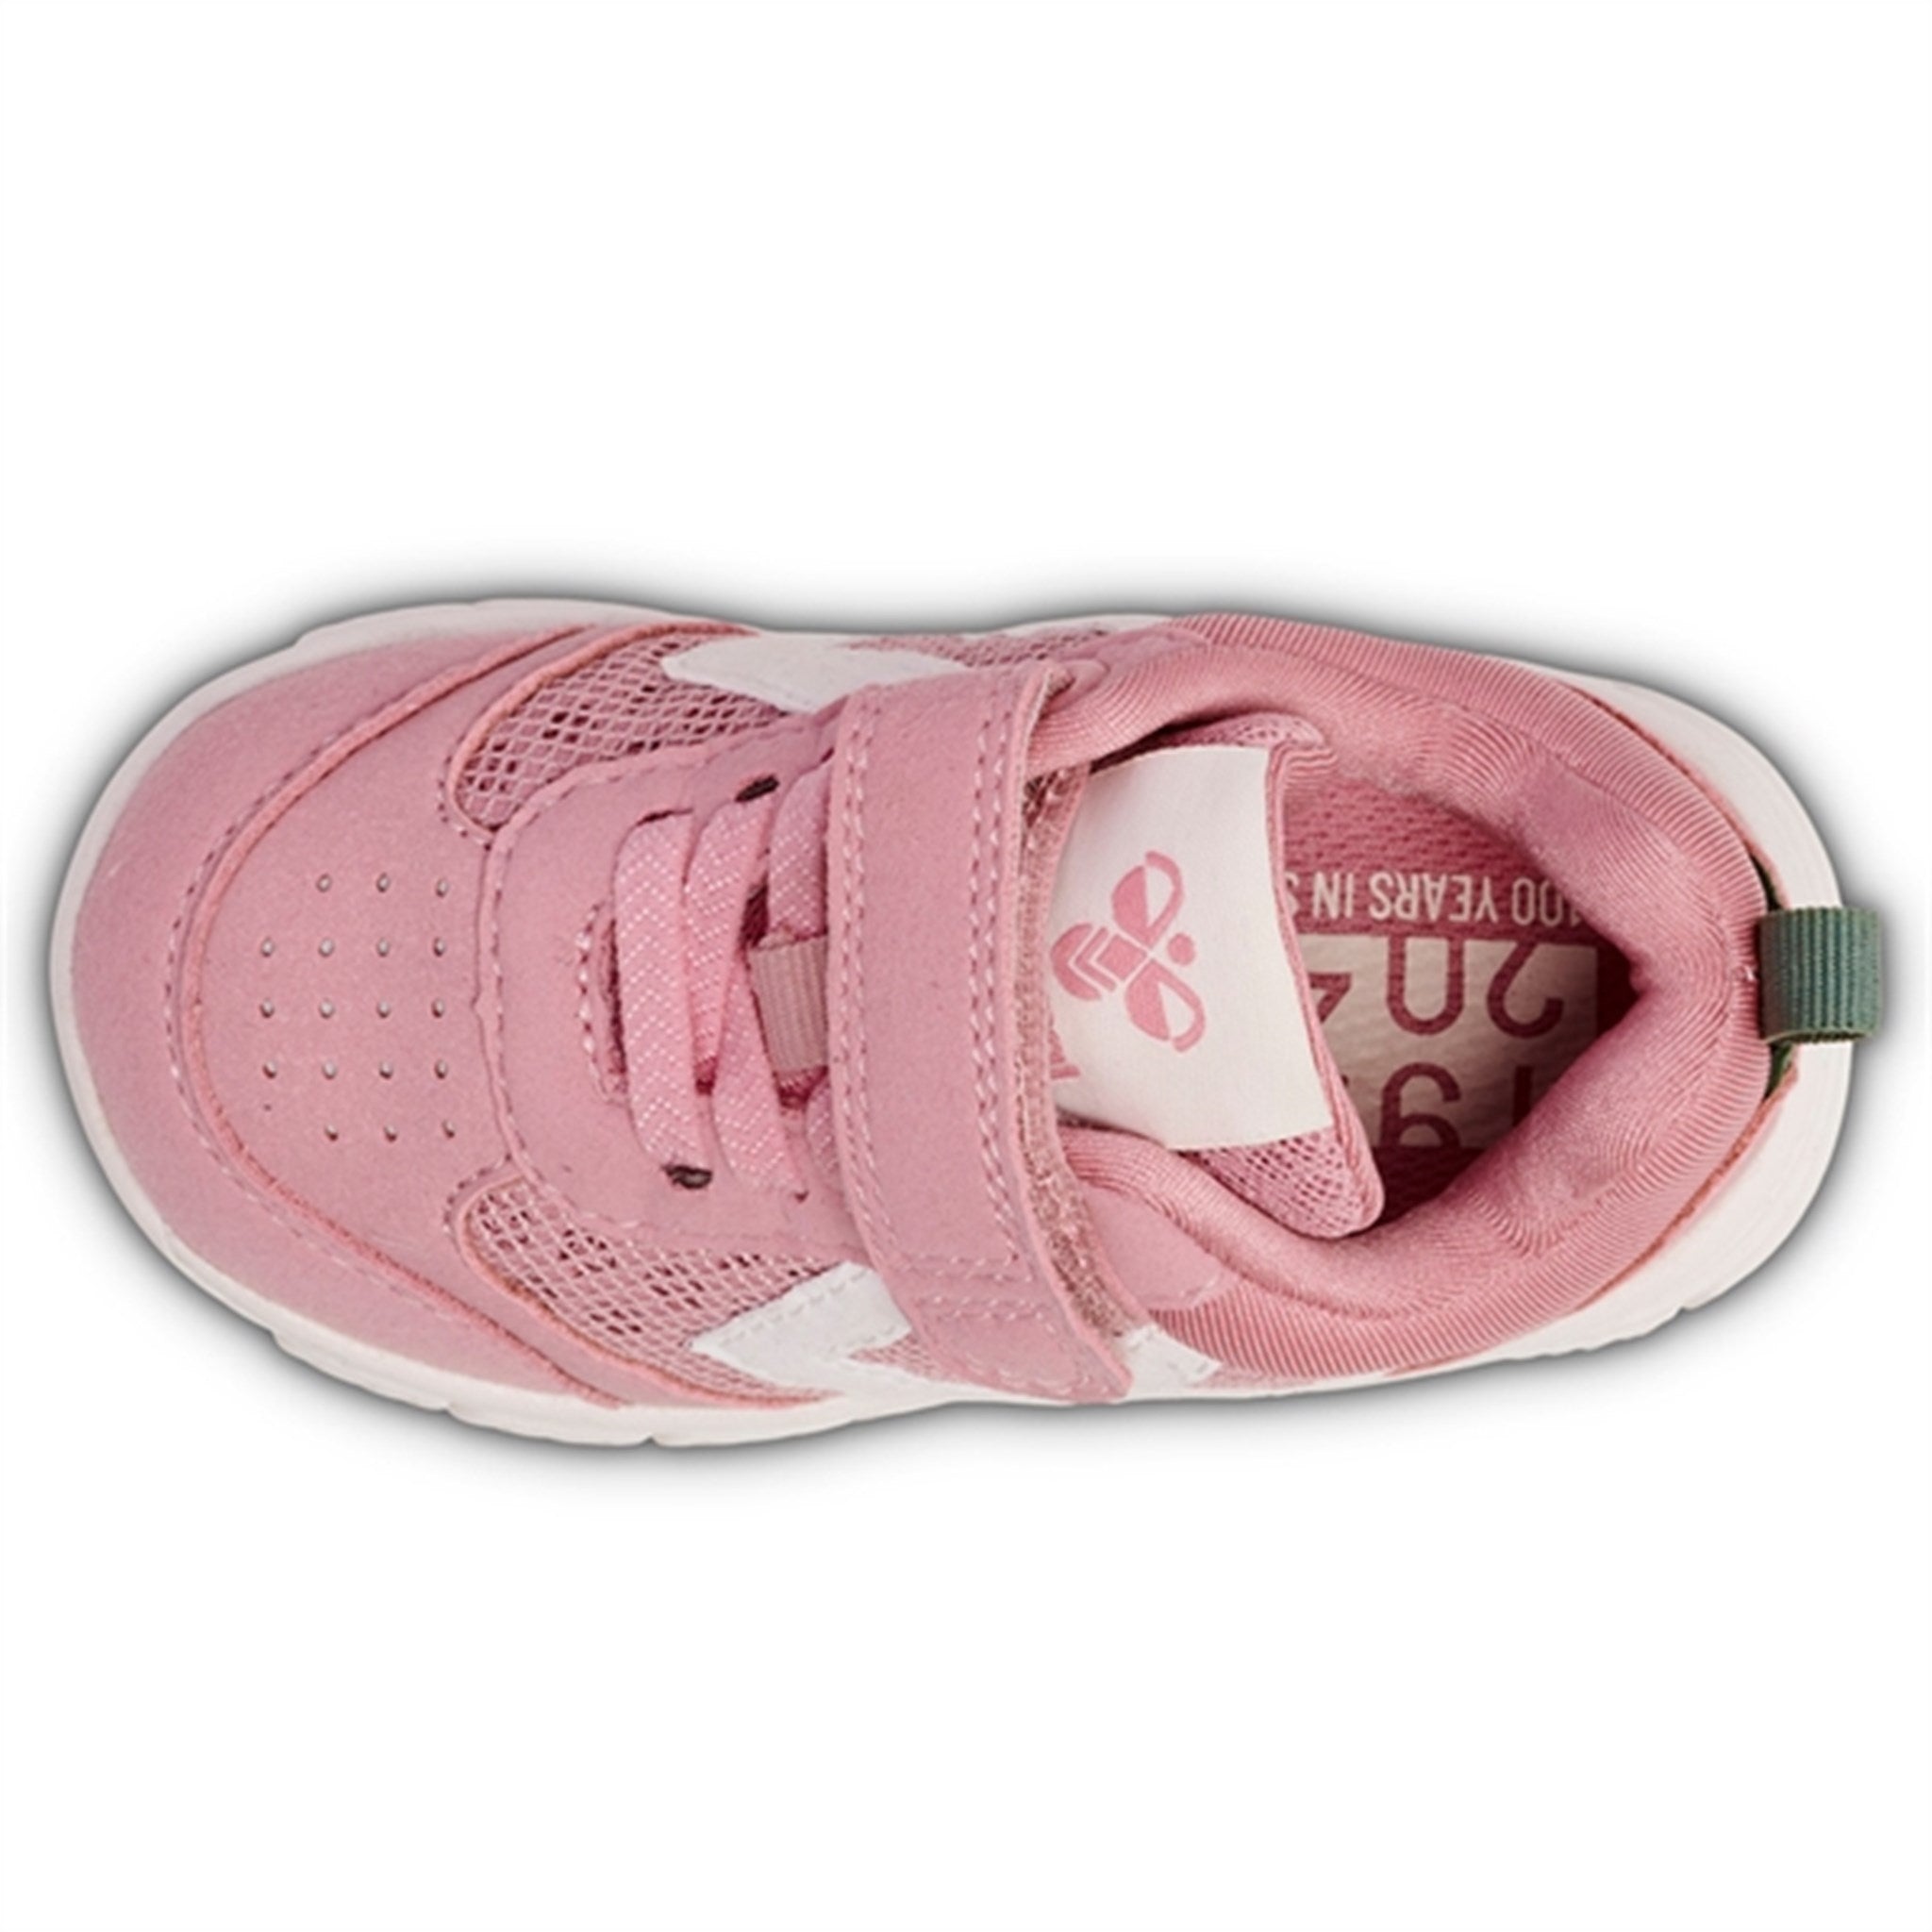 Hummel Crosslite Infant Sneakers Zephyr 4